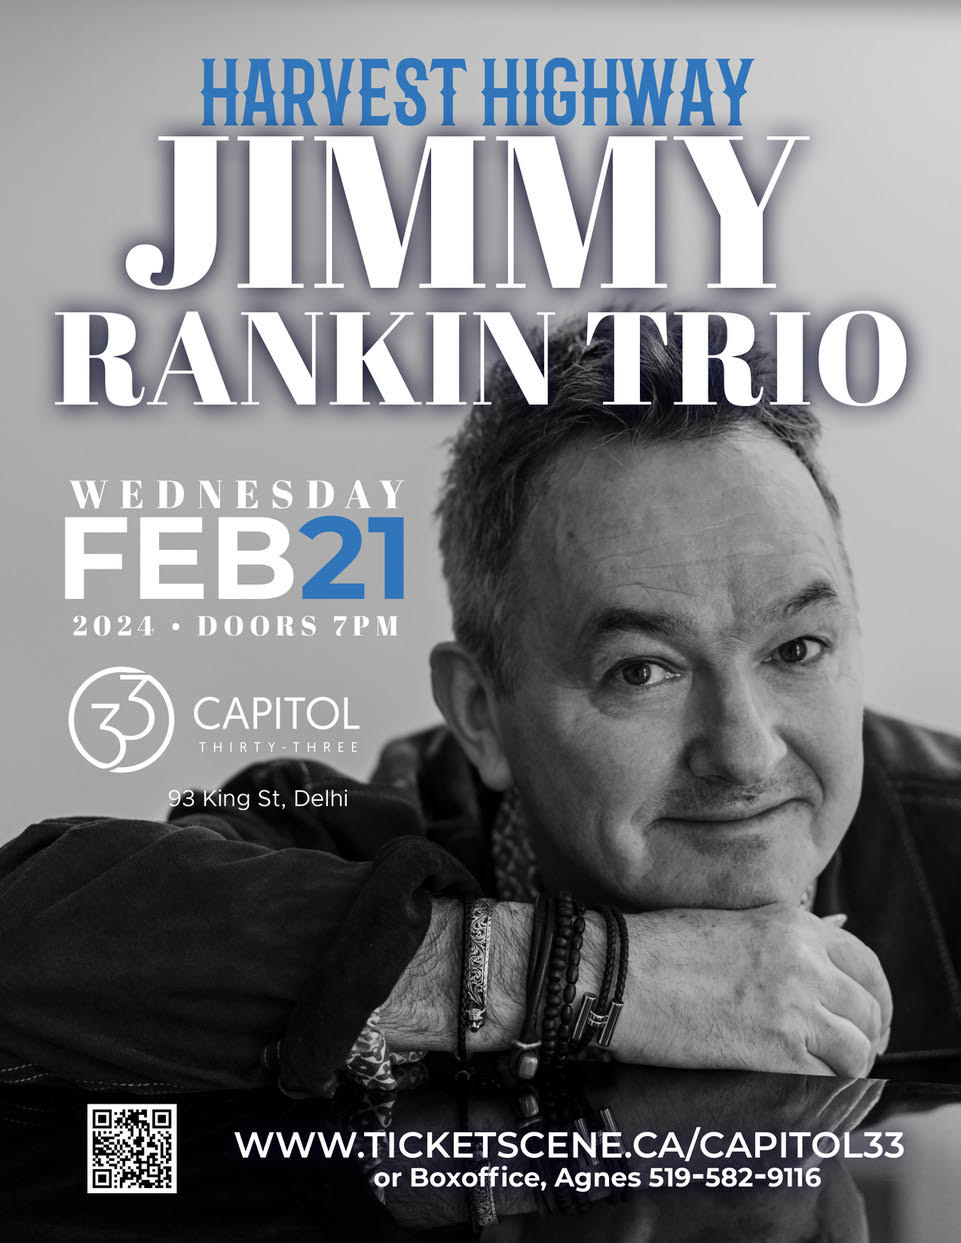 Jimmy Rankin Trio - HARVEST HIGHWAY